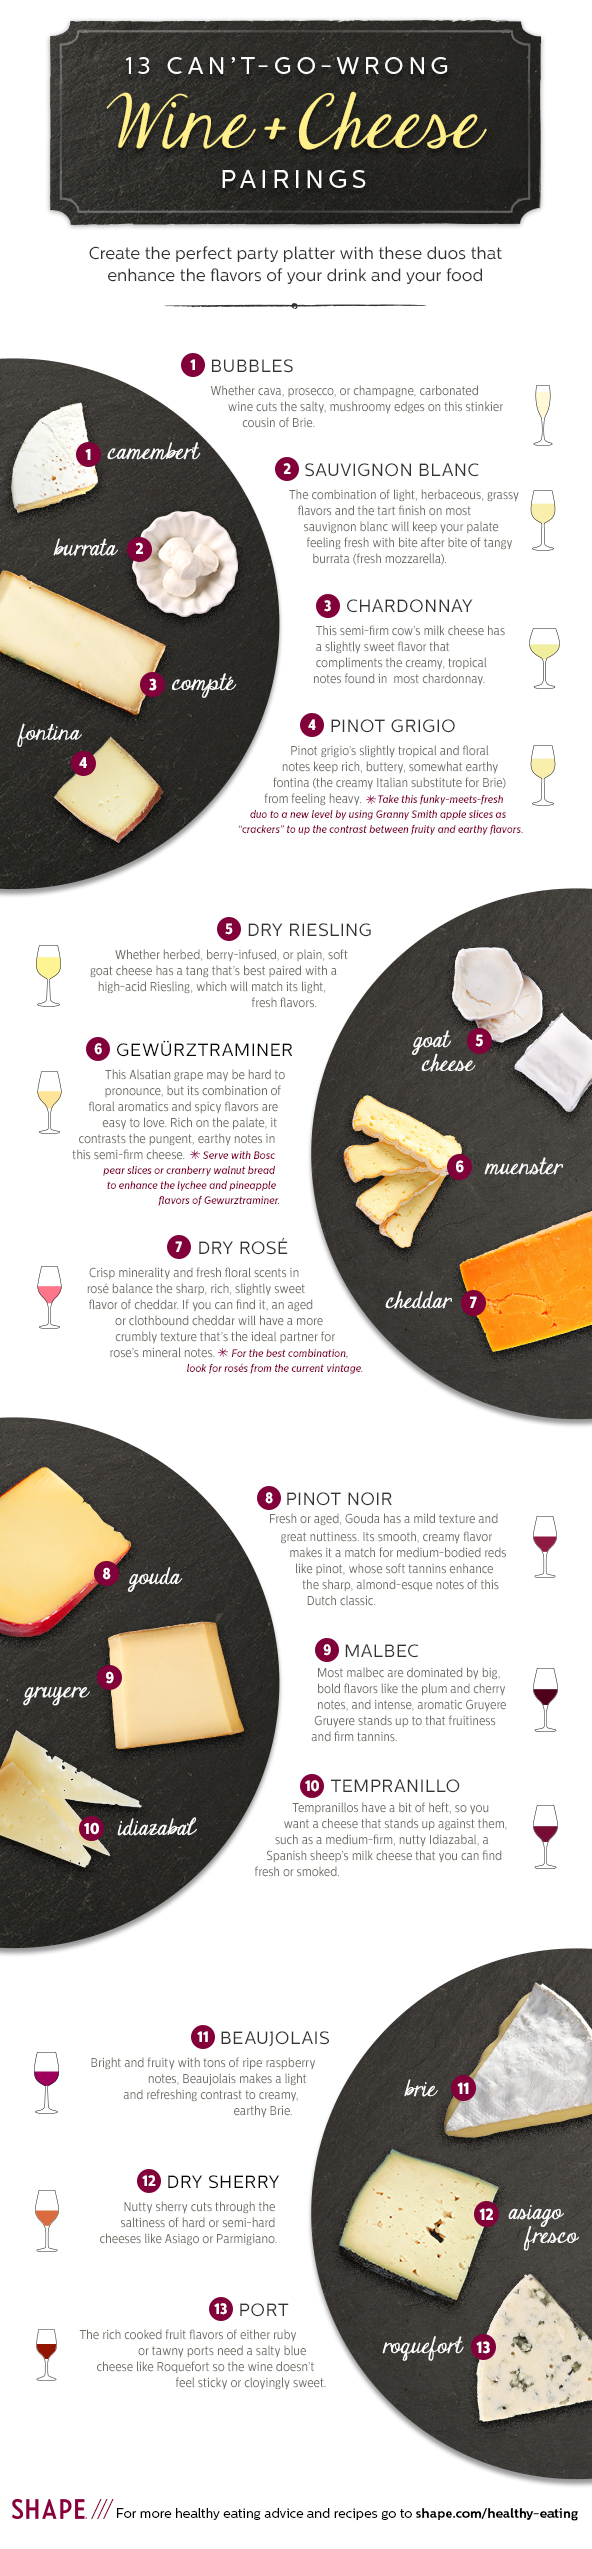 wine-and-cheese-pairings-592